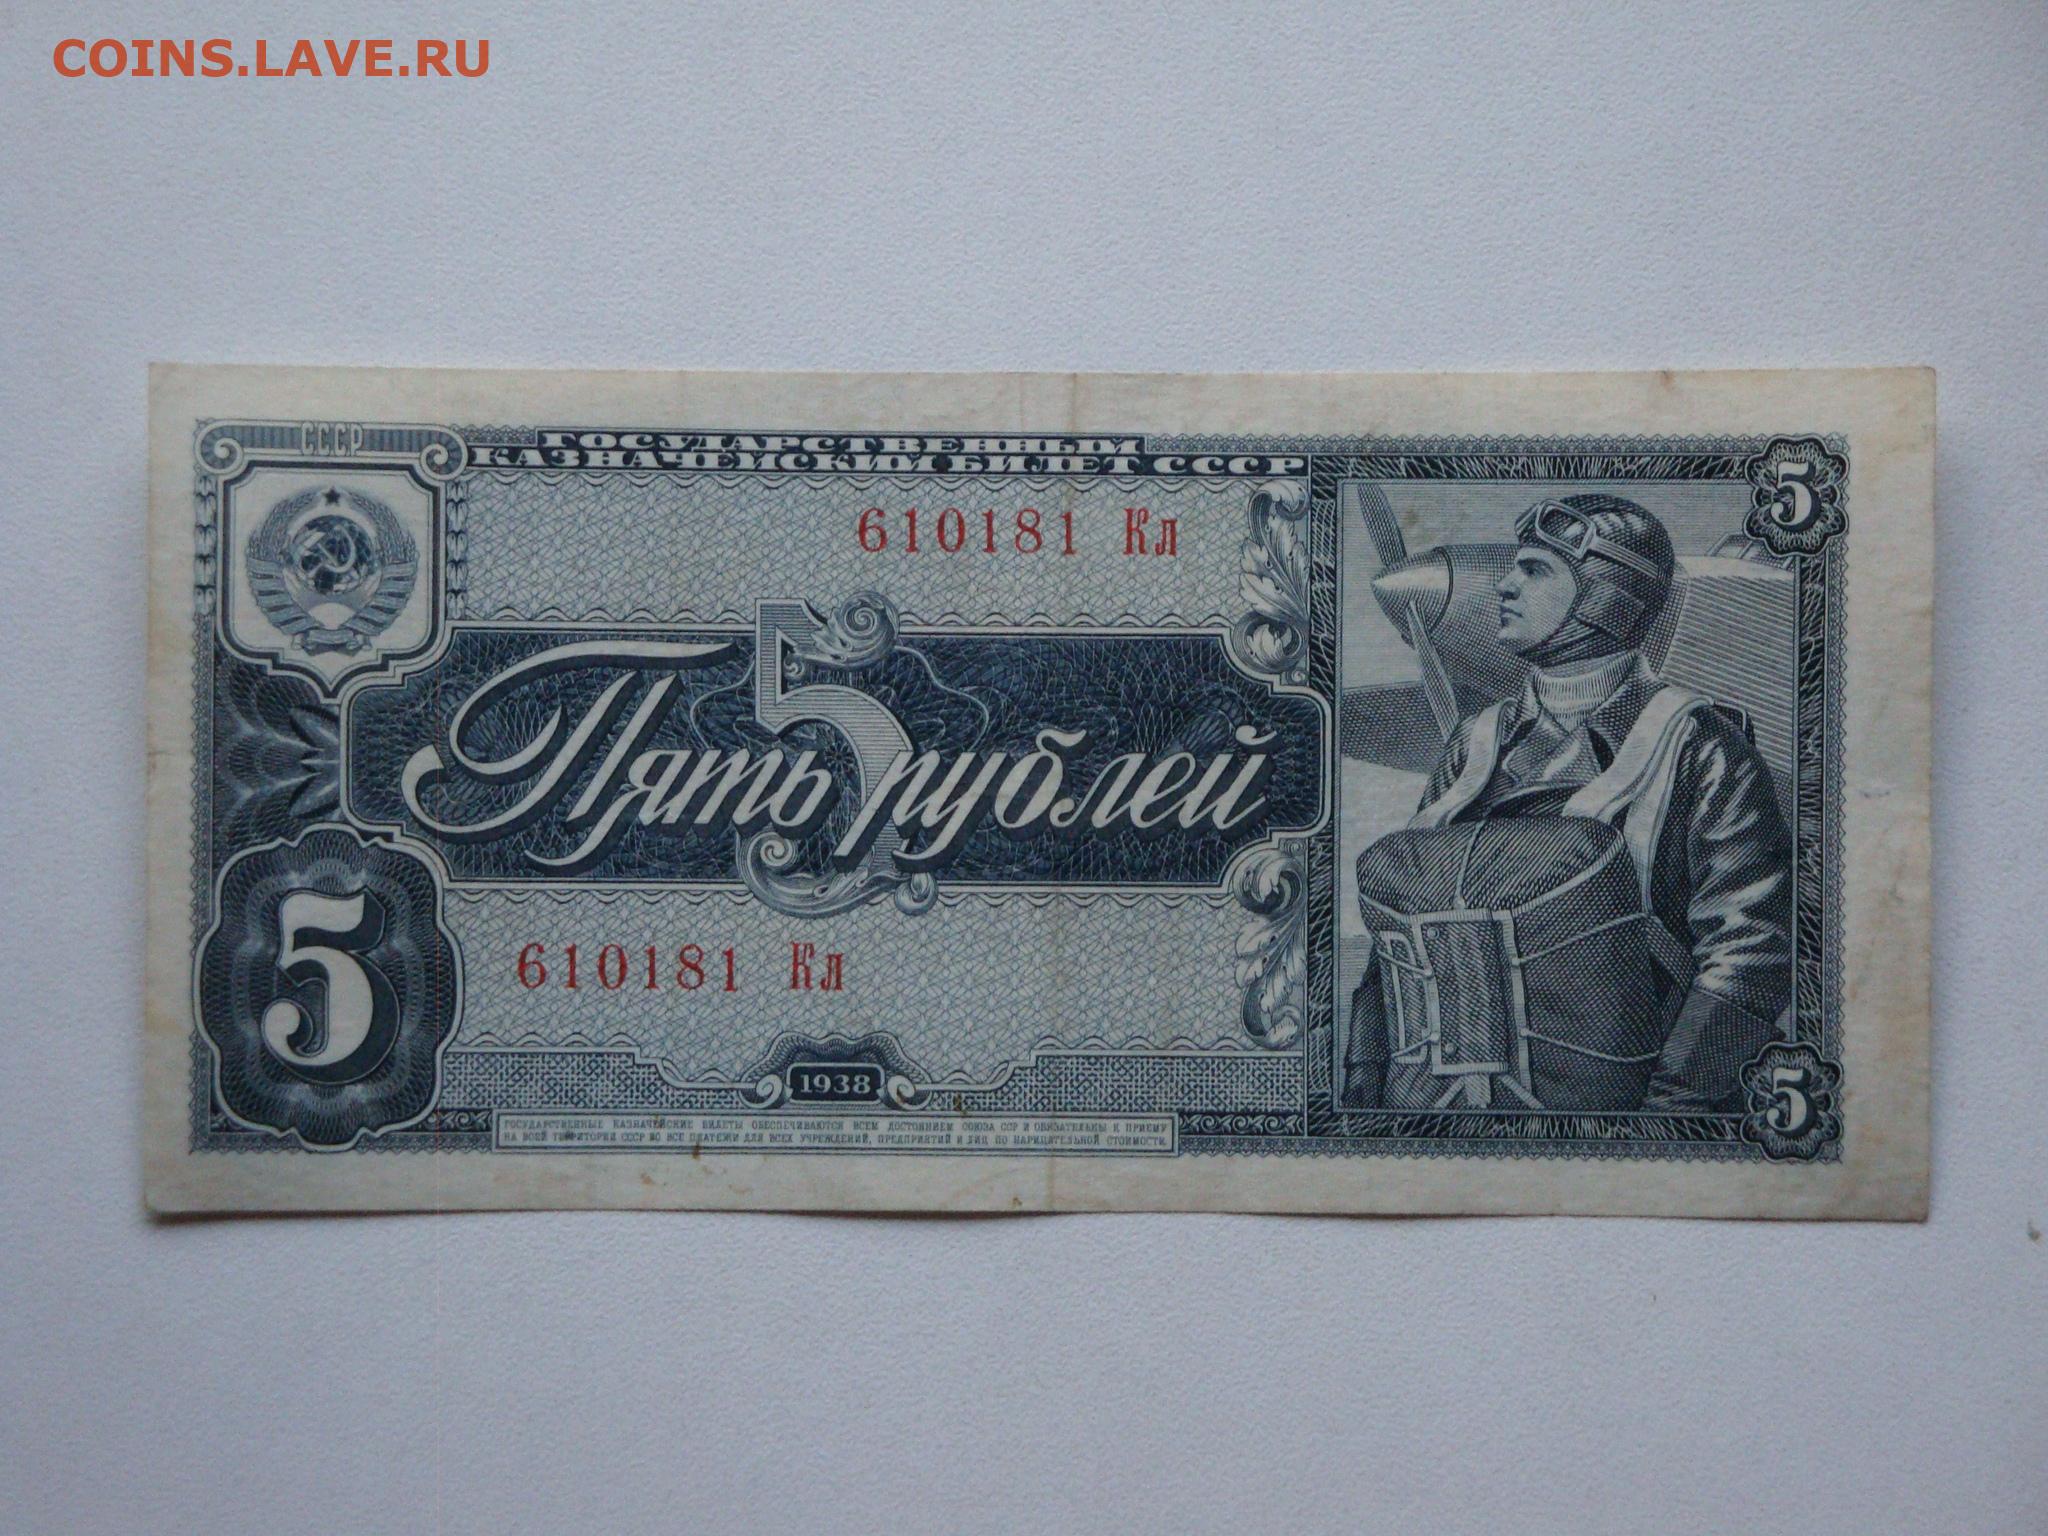 5 рублей в долларах. Банкноты СССР 1938 года. Советские денежные знаки 1938 года. Рубль СССР 1938. Банкнота 5 рублей 1938 года.